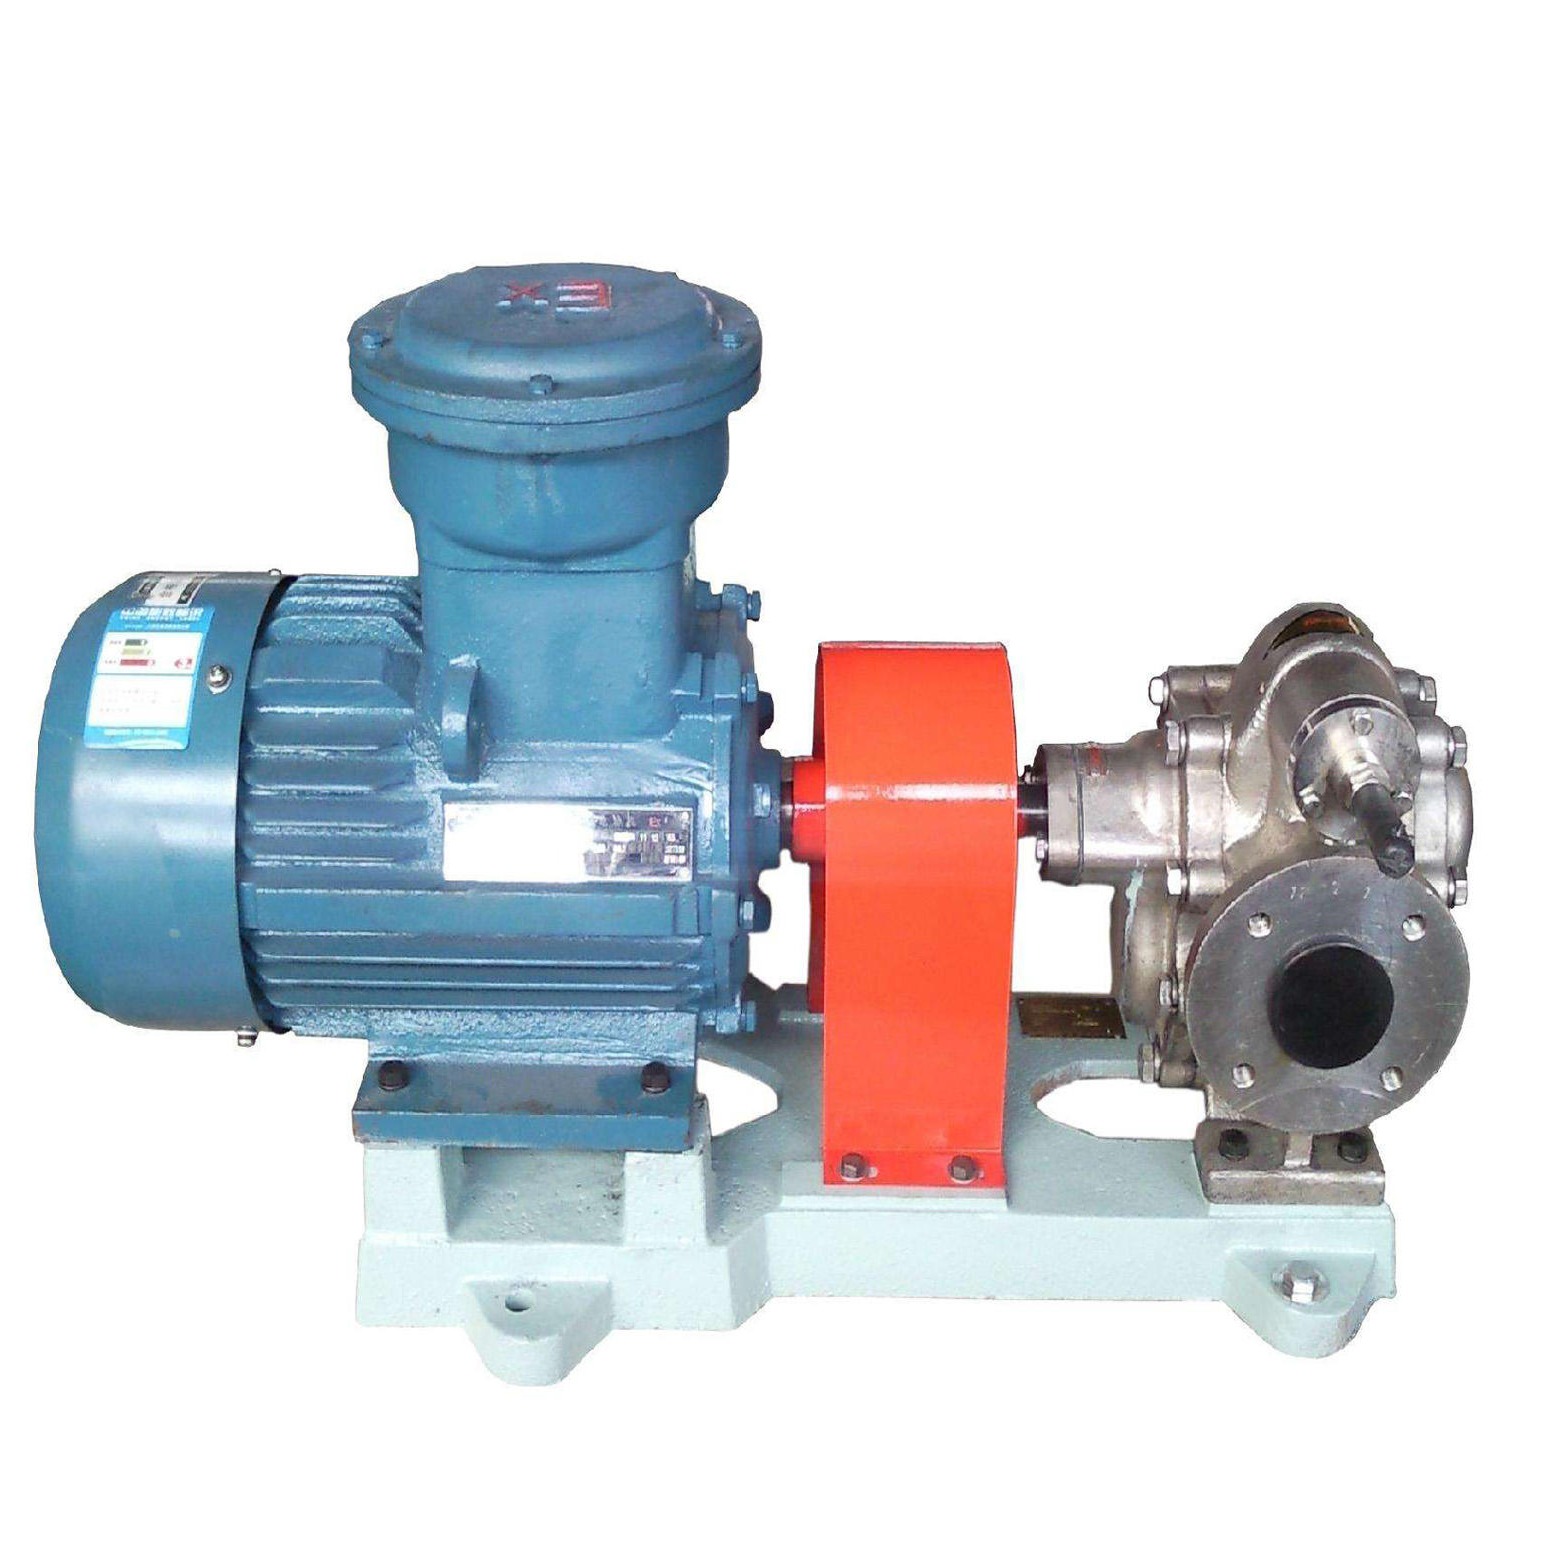 泊头齿轮泵 KCB-300不锈钢齿轮泵(2CY-18/0.36) 齿轮泵耐腐蚀请选择恒盛泵业